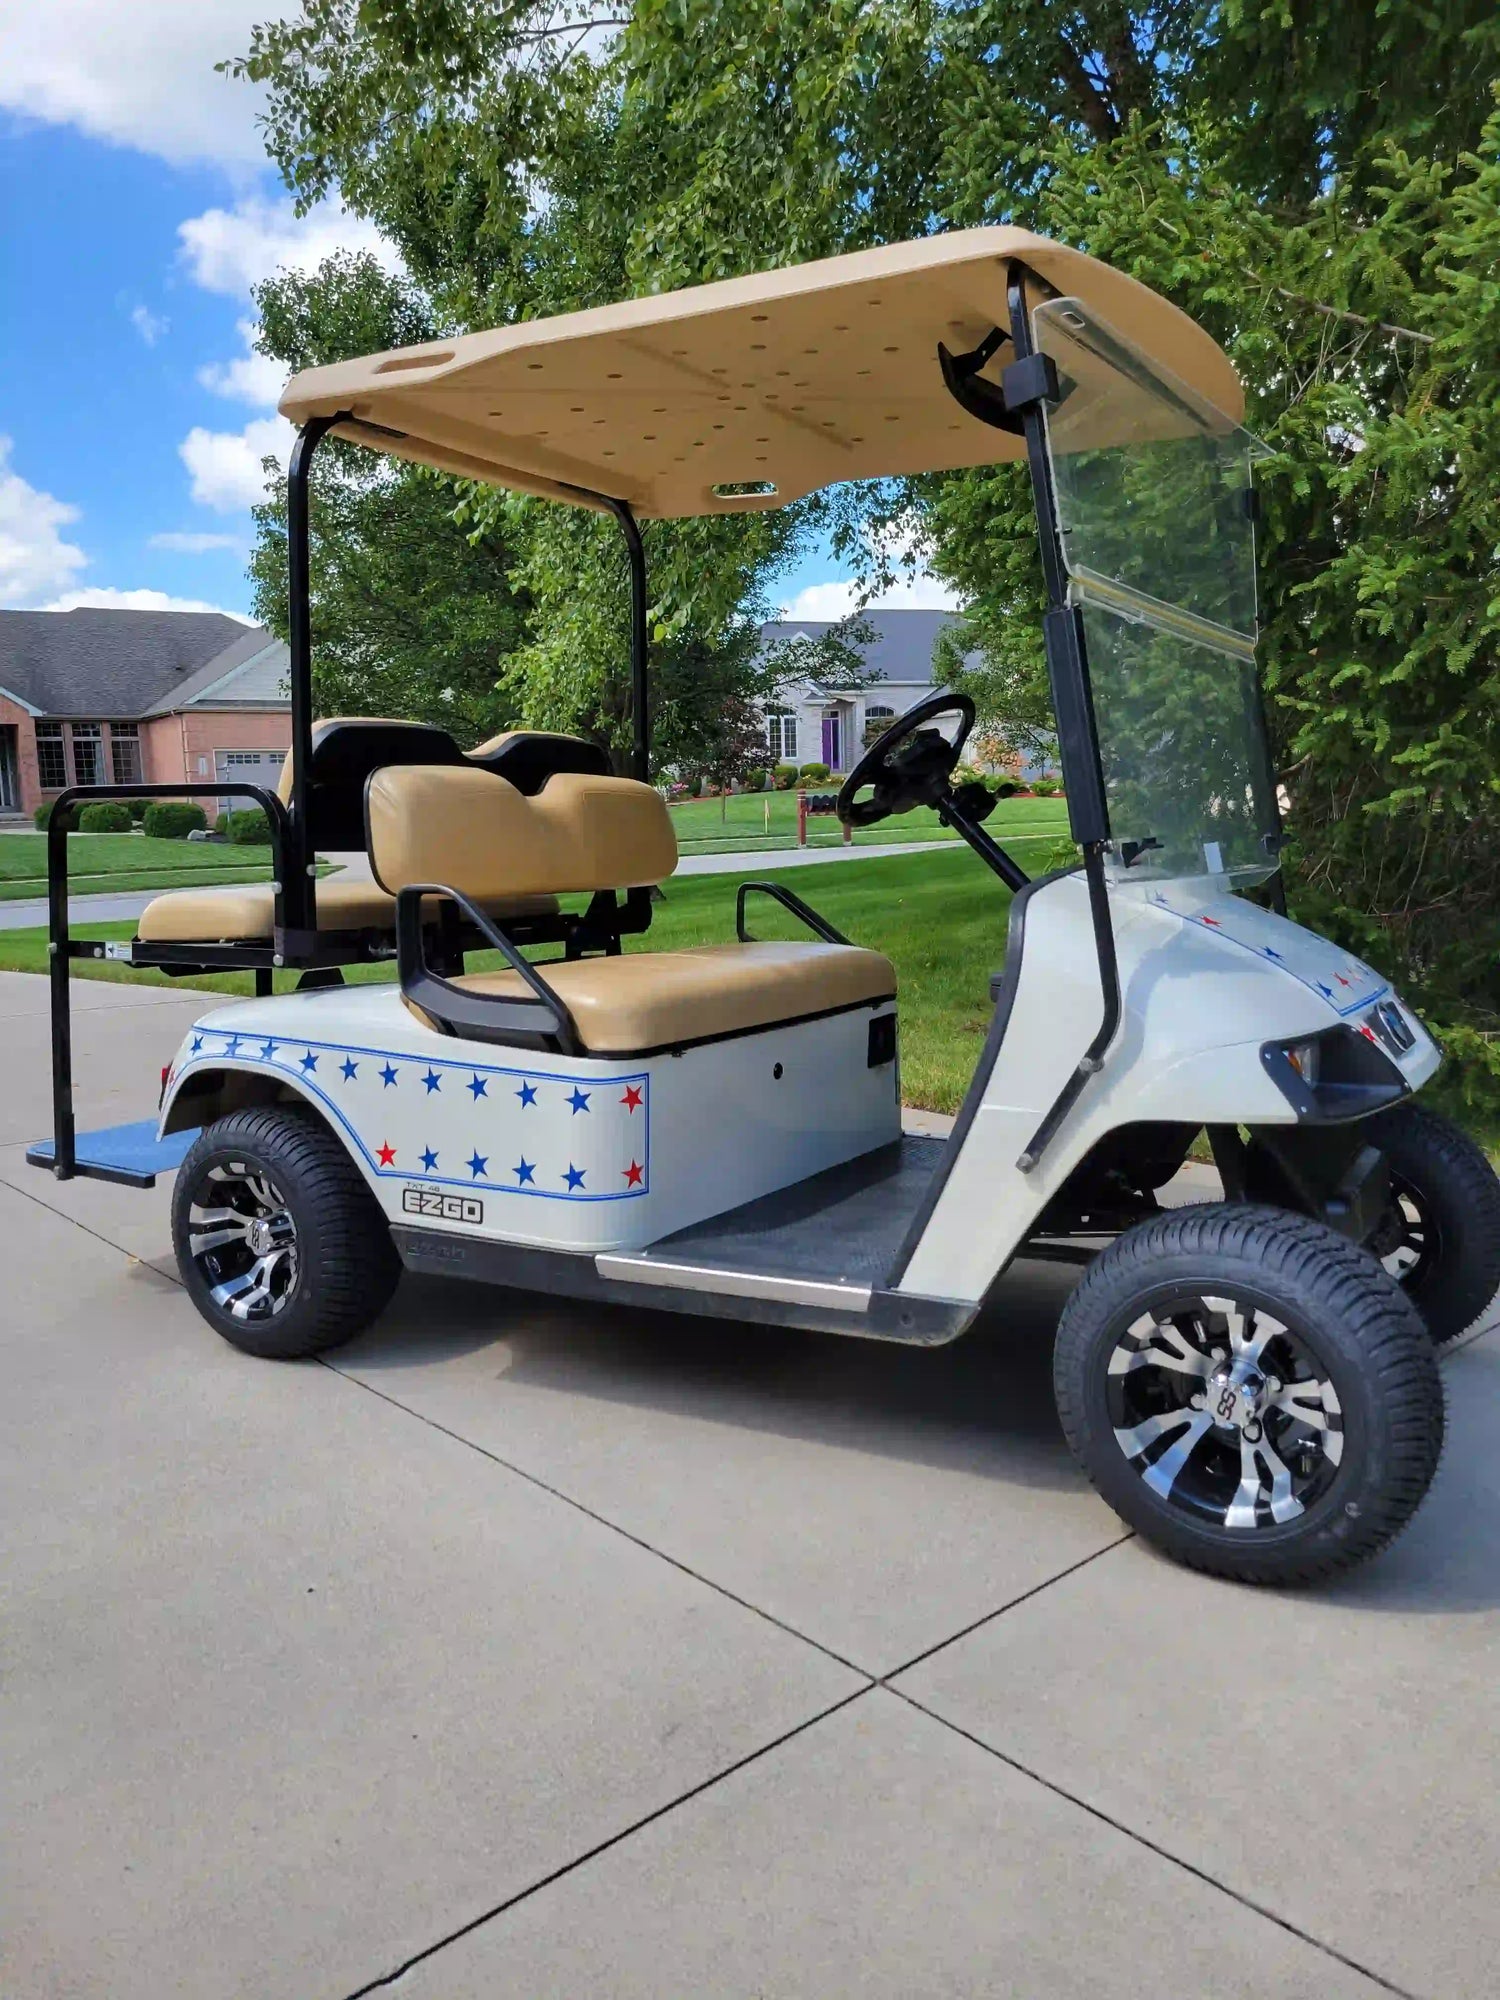 Street-legal golf cart